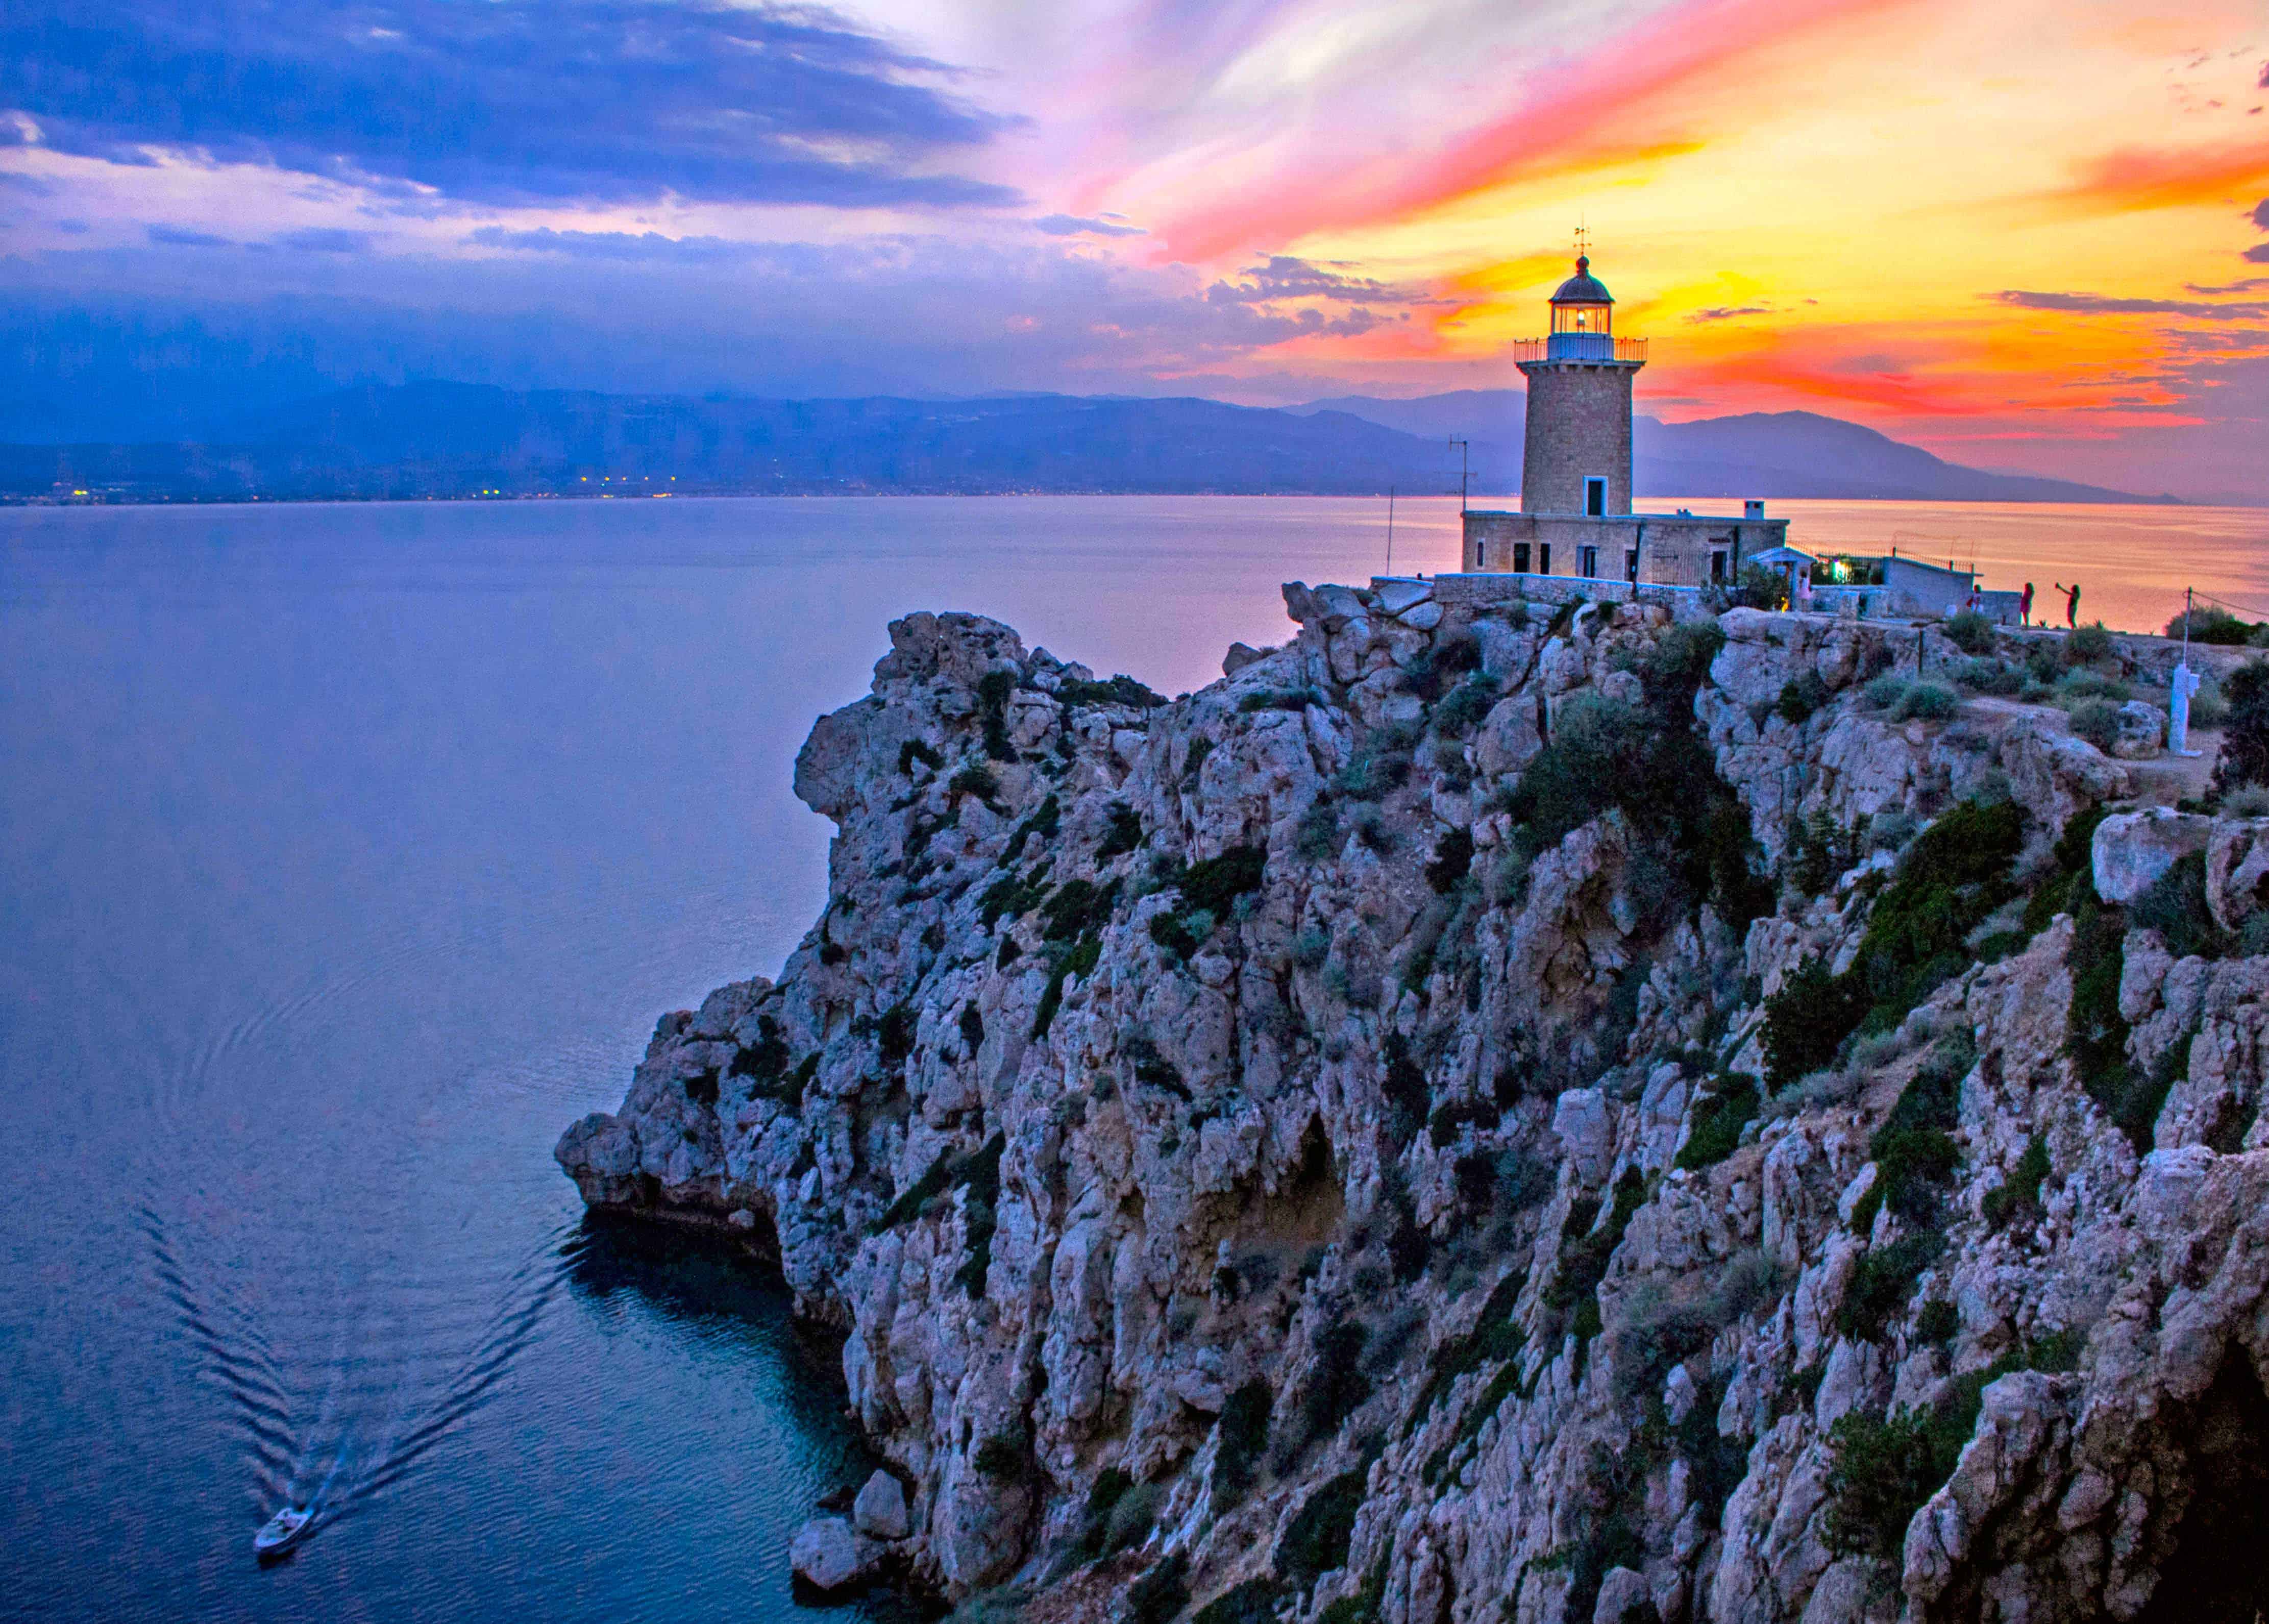 18. Θανάσης Στέργιος (The lighthouse will guide you home)